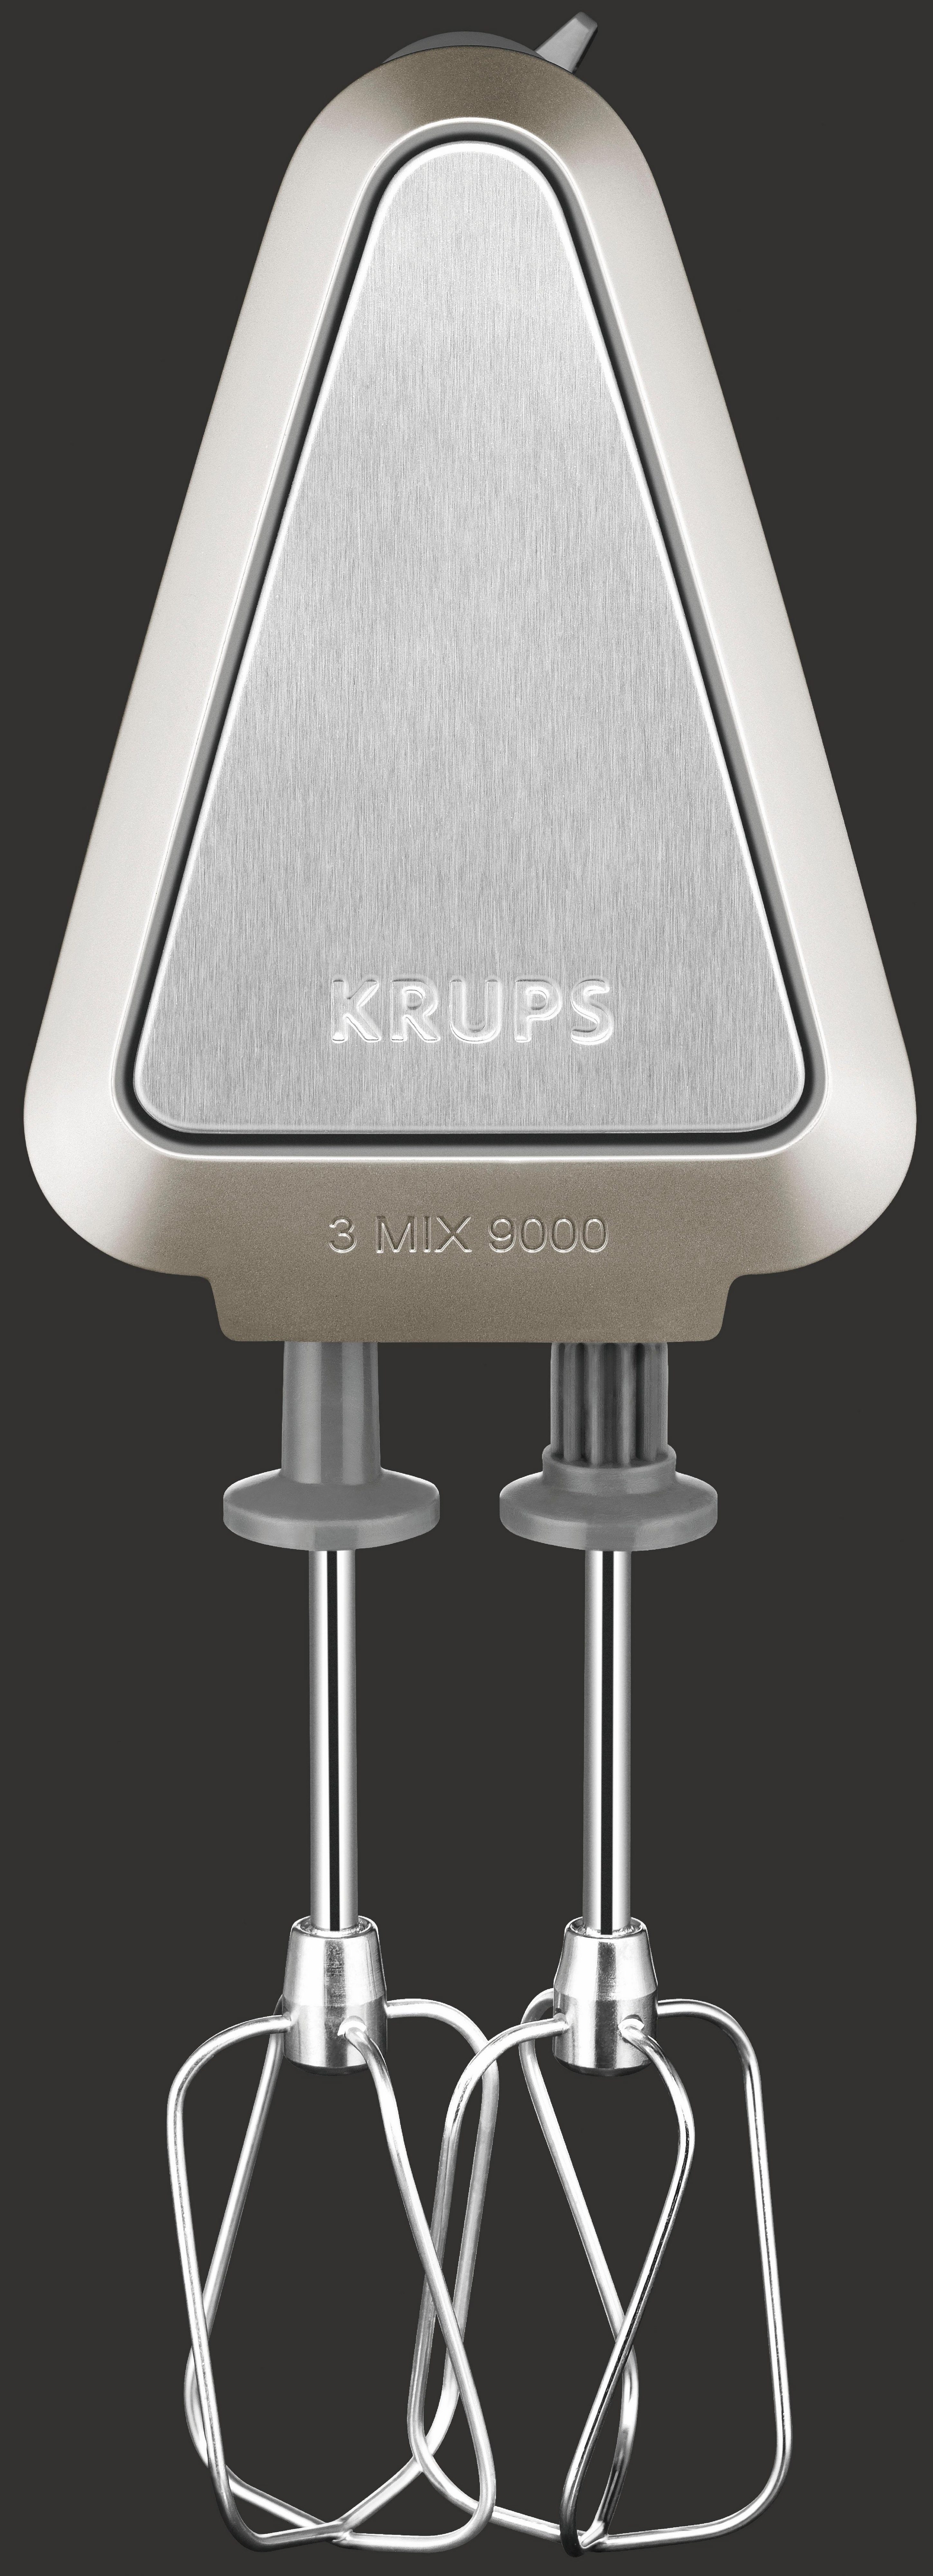 Krups Handmixer Deluxe W, Auswurftaste mit 3 GN9011, 500 Geschwindigkeiten 9000 stufenlose langsamem Mix Start+Turbo-&